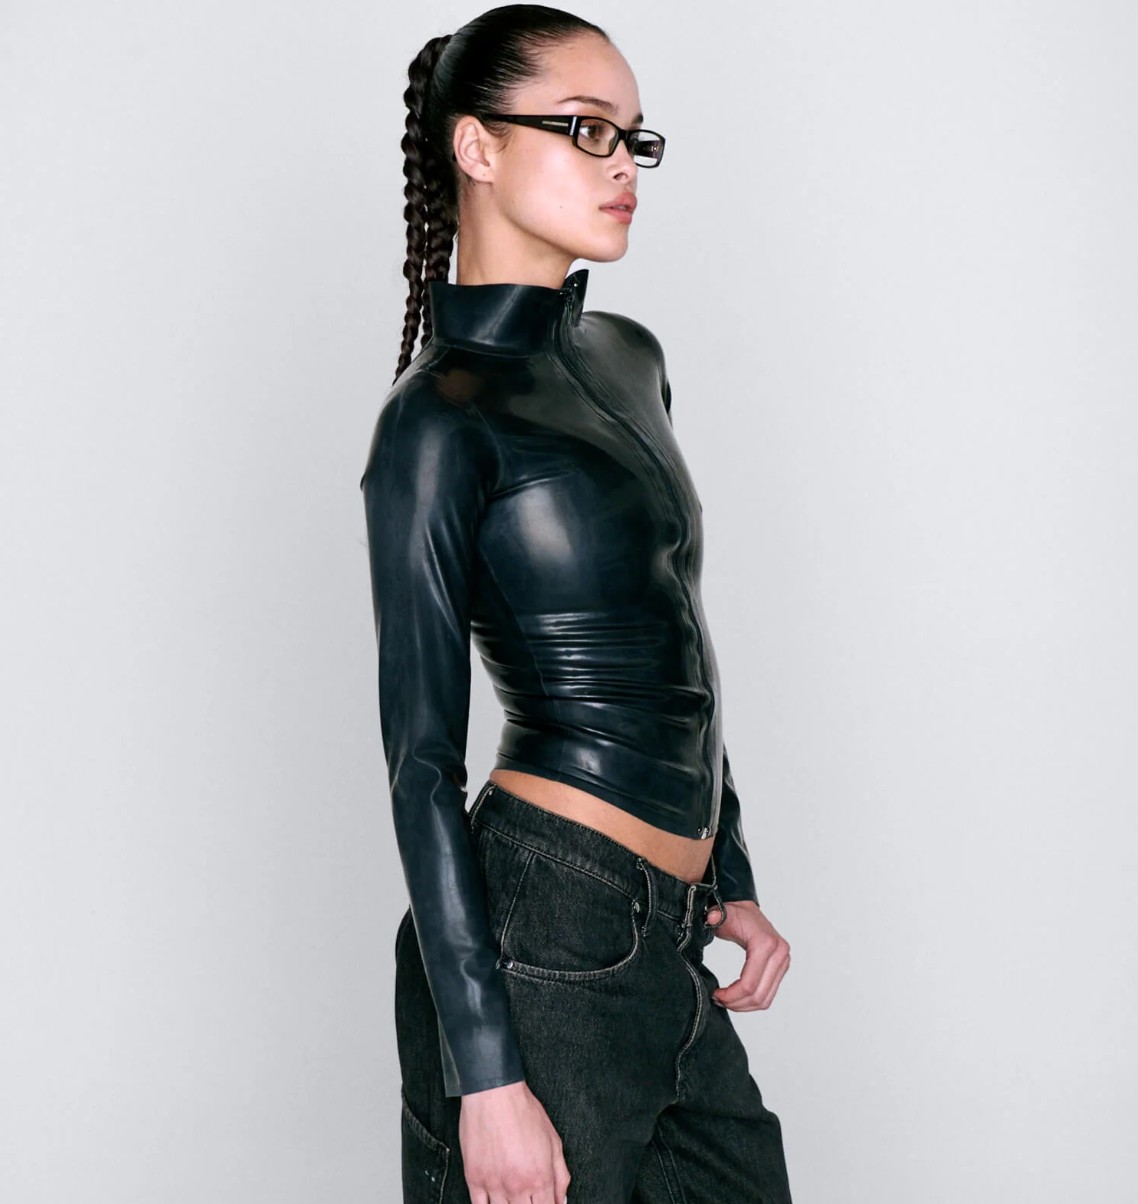 Kick-Ass Fashion Deals: Deep Discounts on Edgy Cyberpunk Style